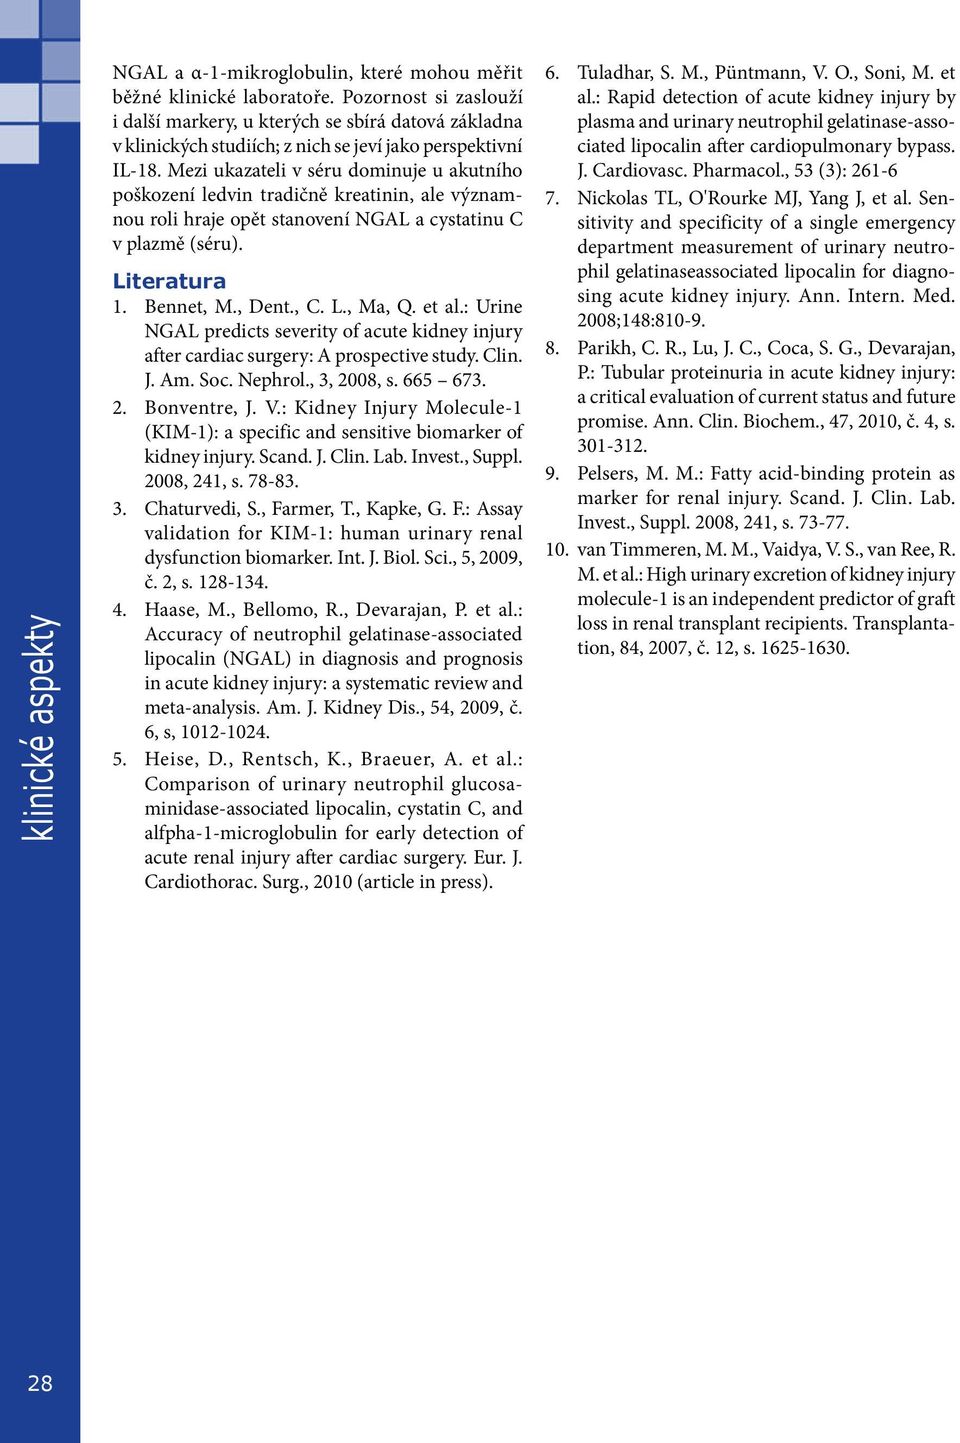 Mezi ukazateli v séru dominuje u akutního poškození ledvin tradičně kreatinin, ale významnou roli hraje opět stanovení NGAL a cystatinu C v plazmě (séru). Literatura 1. Bennet, M., Dent., C. L., Ma, Q.